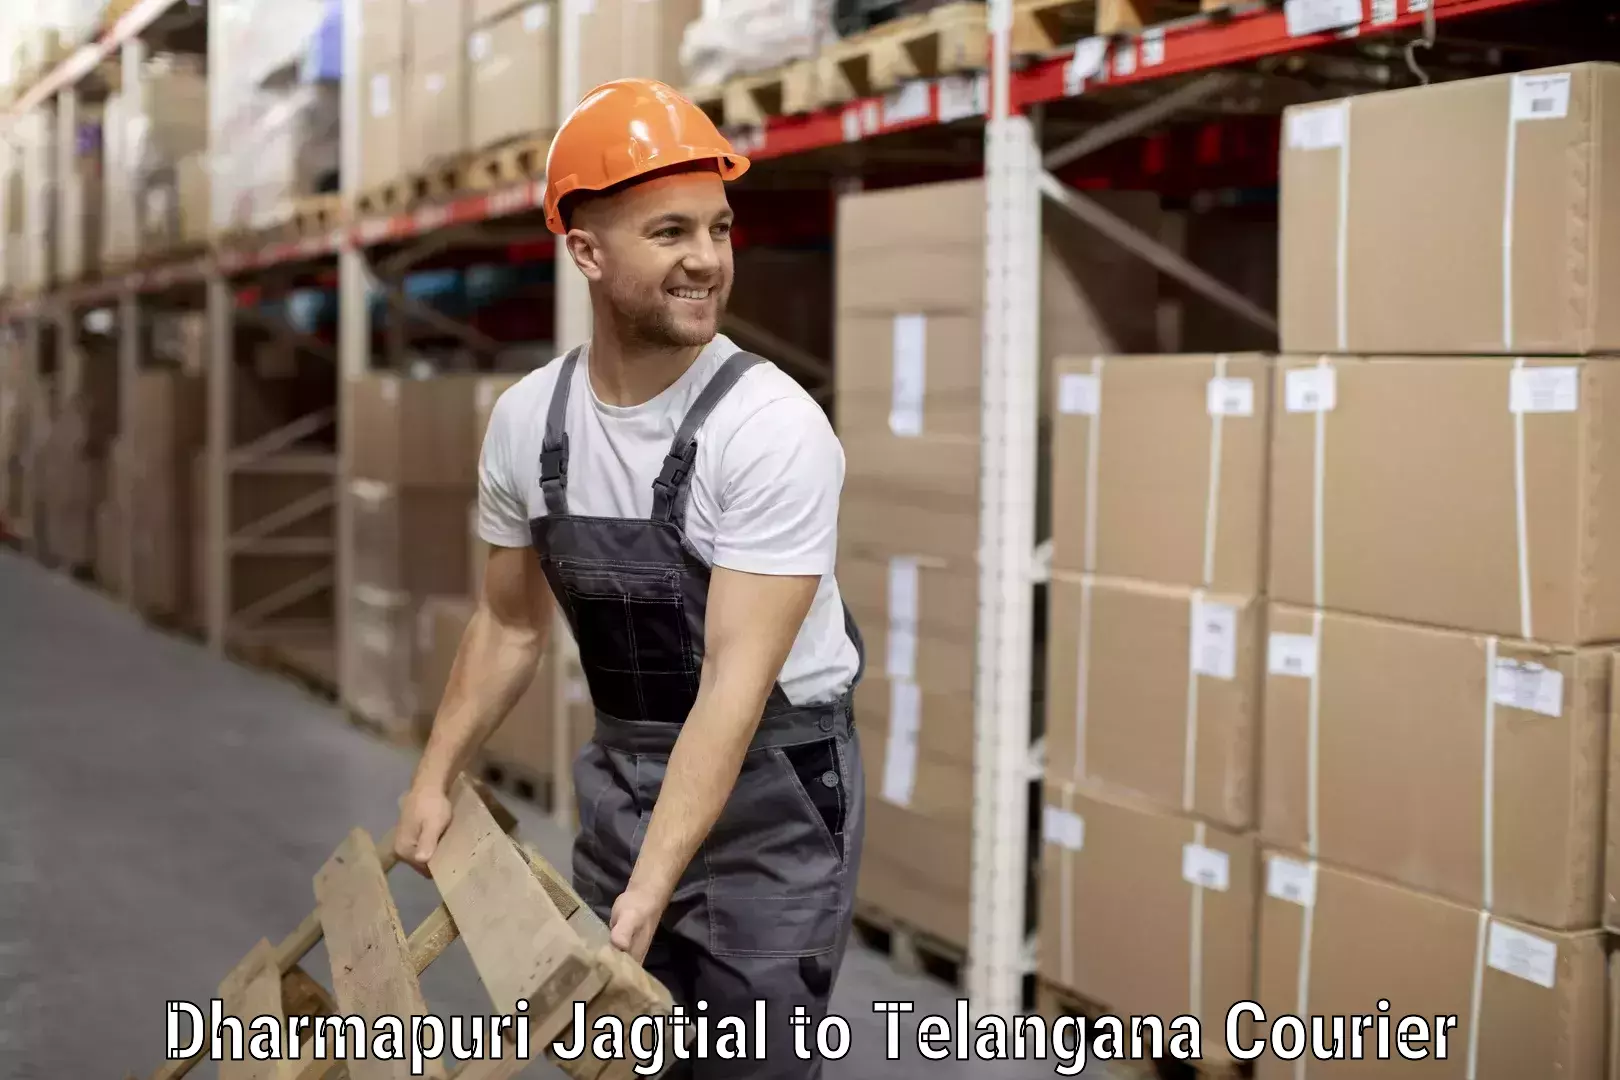 International baggage delivery Dharmapuri Jagtial to Kadthal